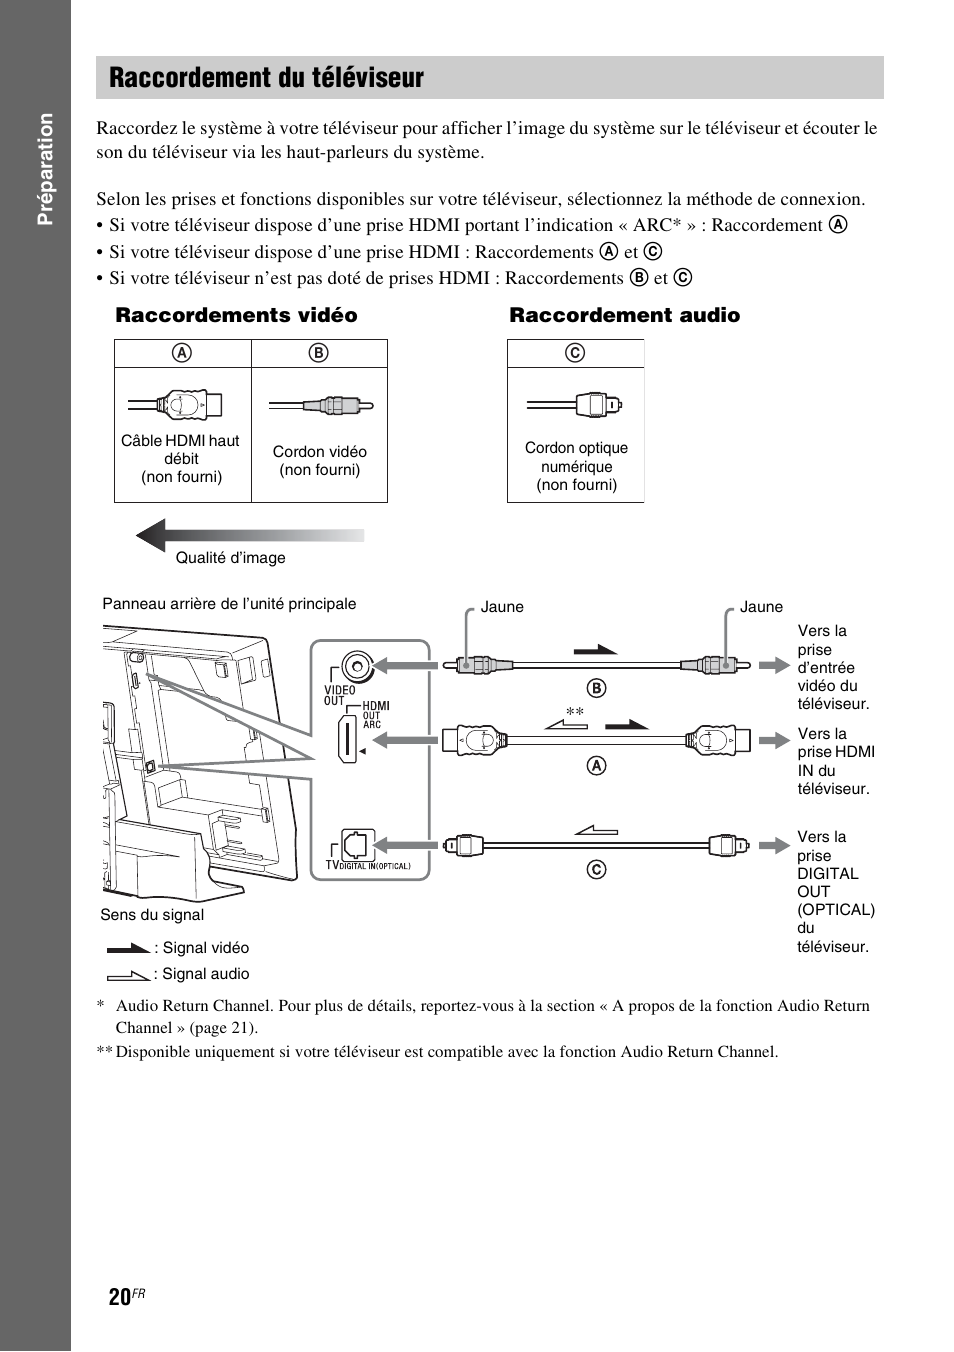 Raccordement du téléviseur, E 20) | Sony BDV-L600 Manuel d'utilisation | Page 20 / 88